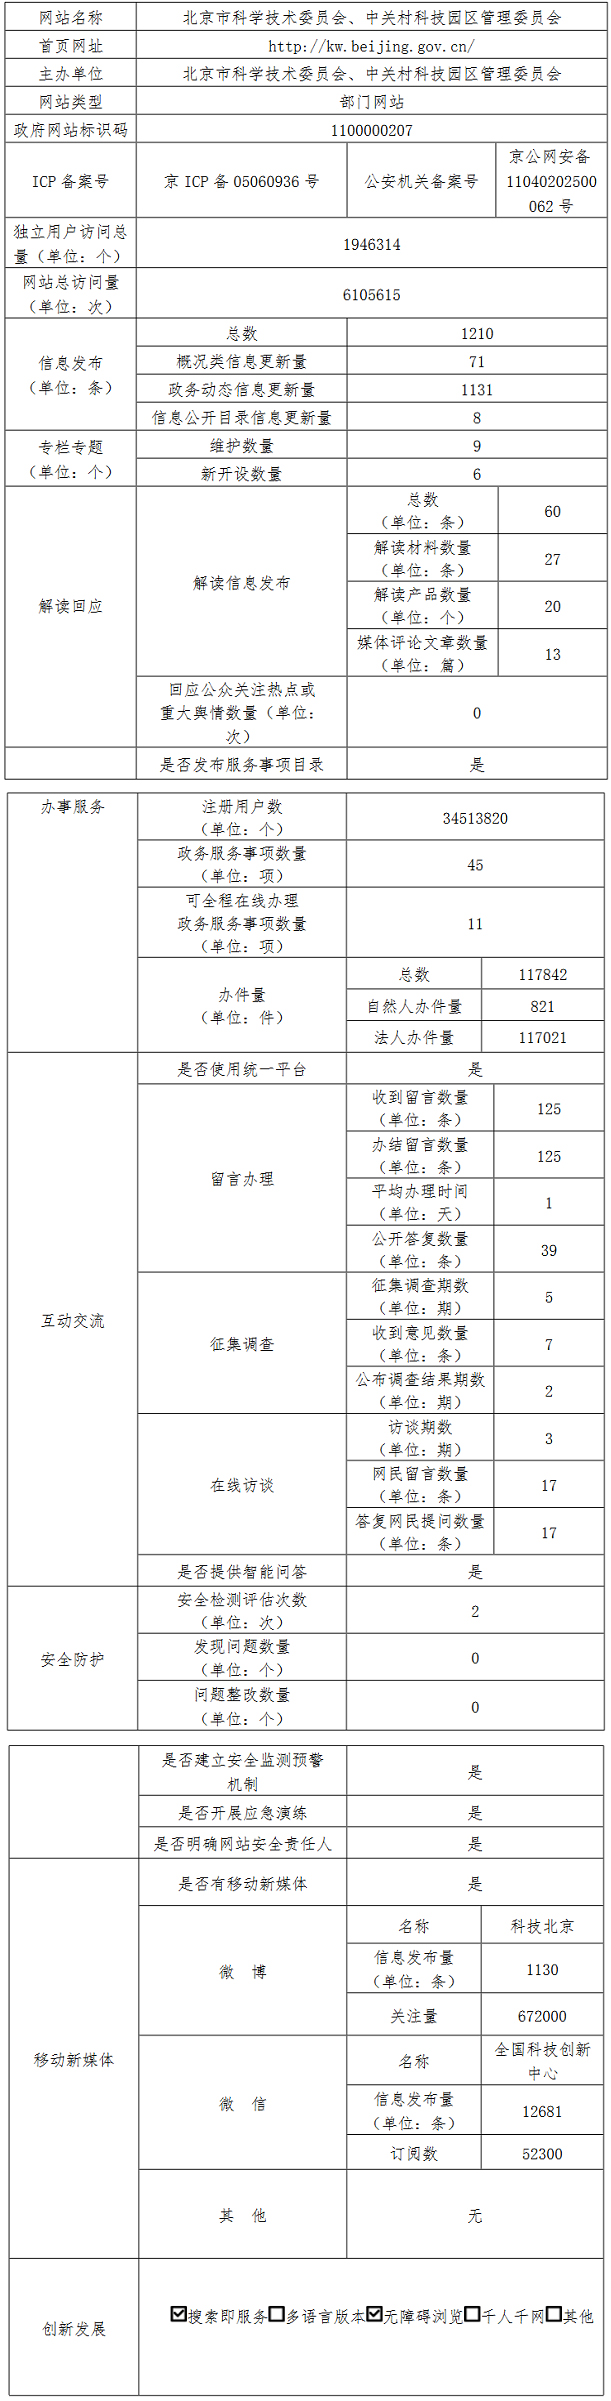 北京市科學技術委員會、中關村科技園區管理委員會2021年政府網站年度工作報表